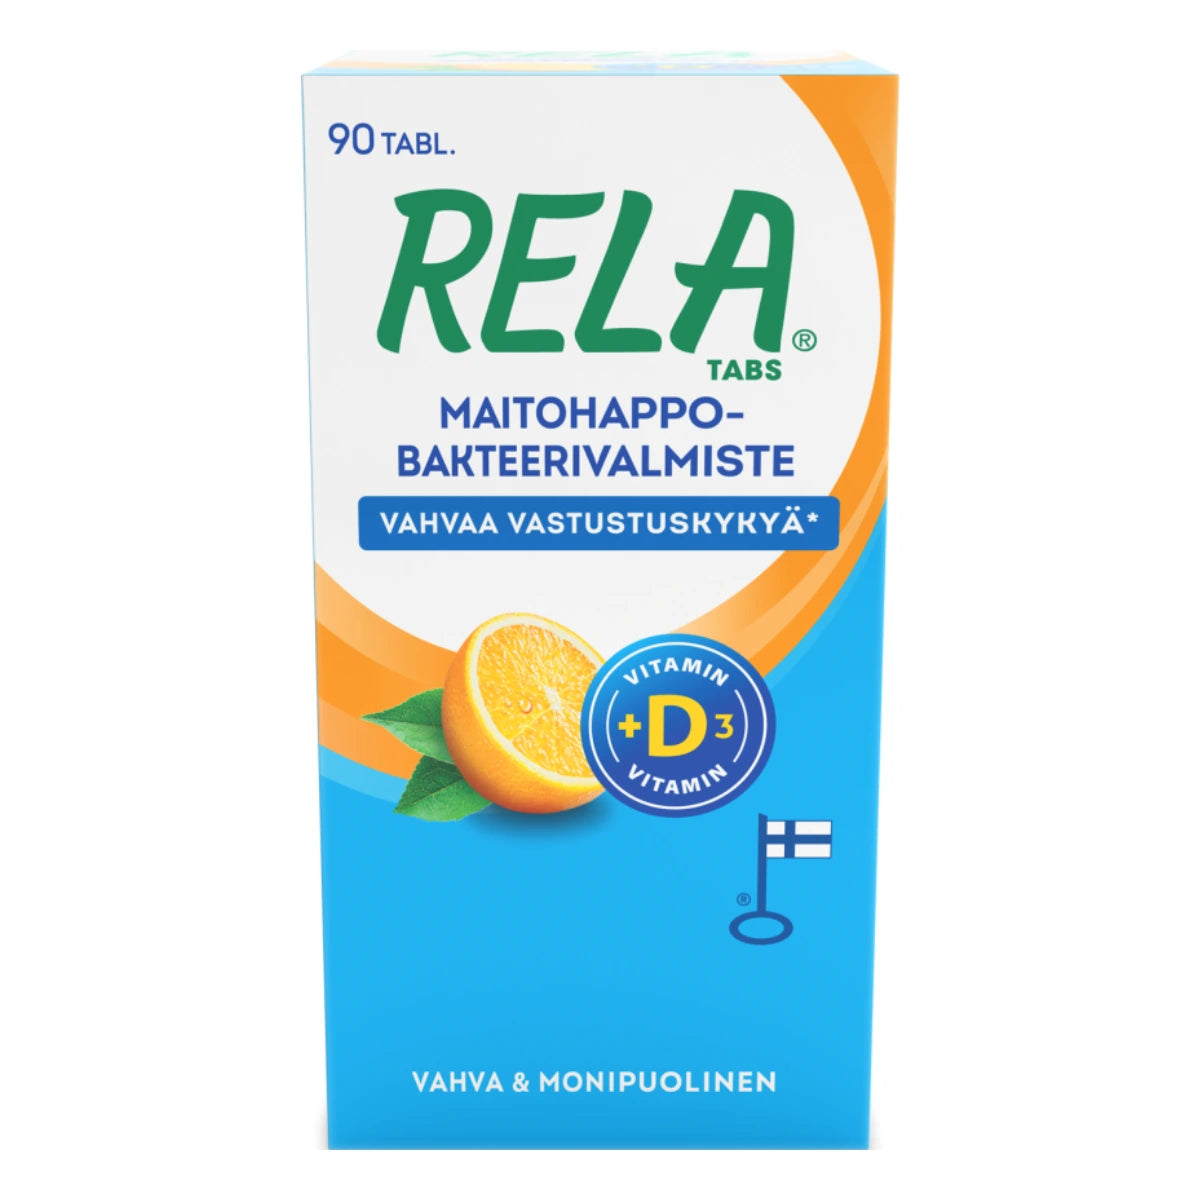 RELA Tabs Appelsiini + D3 tabletti 90 kpl sisältävät kahta tutkittua ja korkealaatuista bakteerikantaa